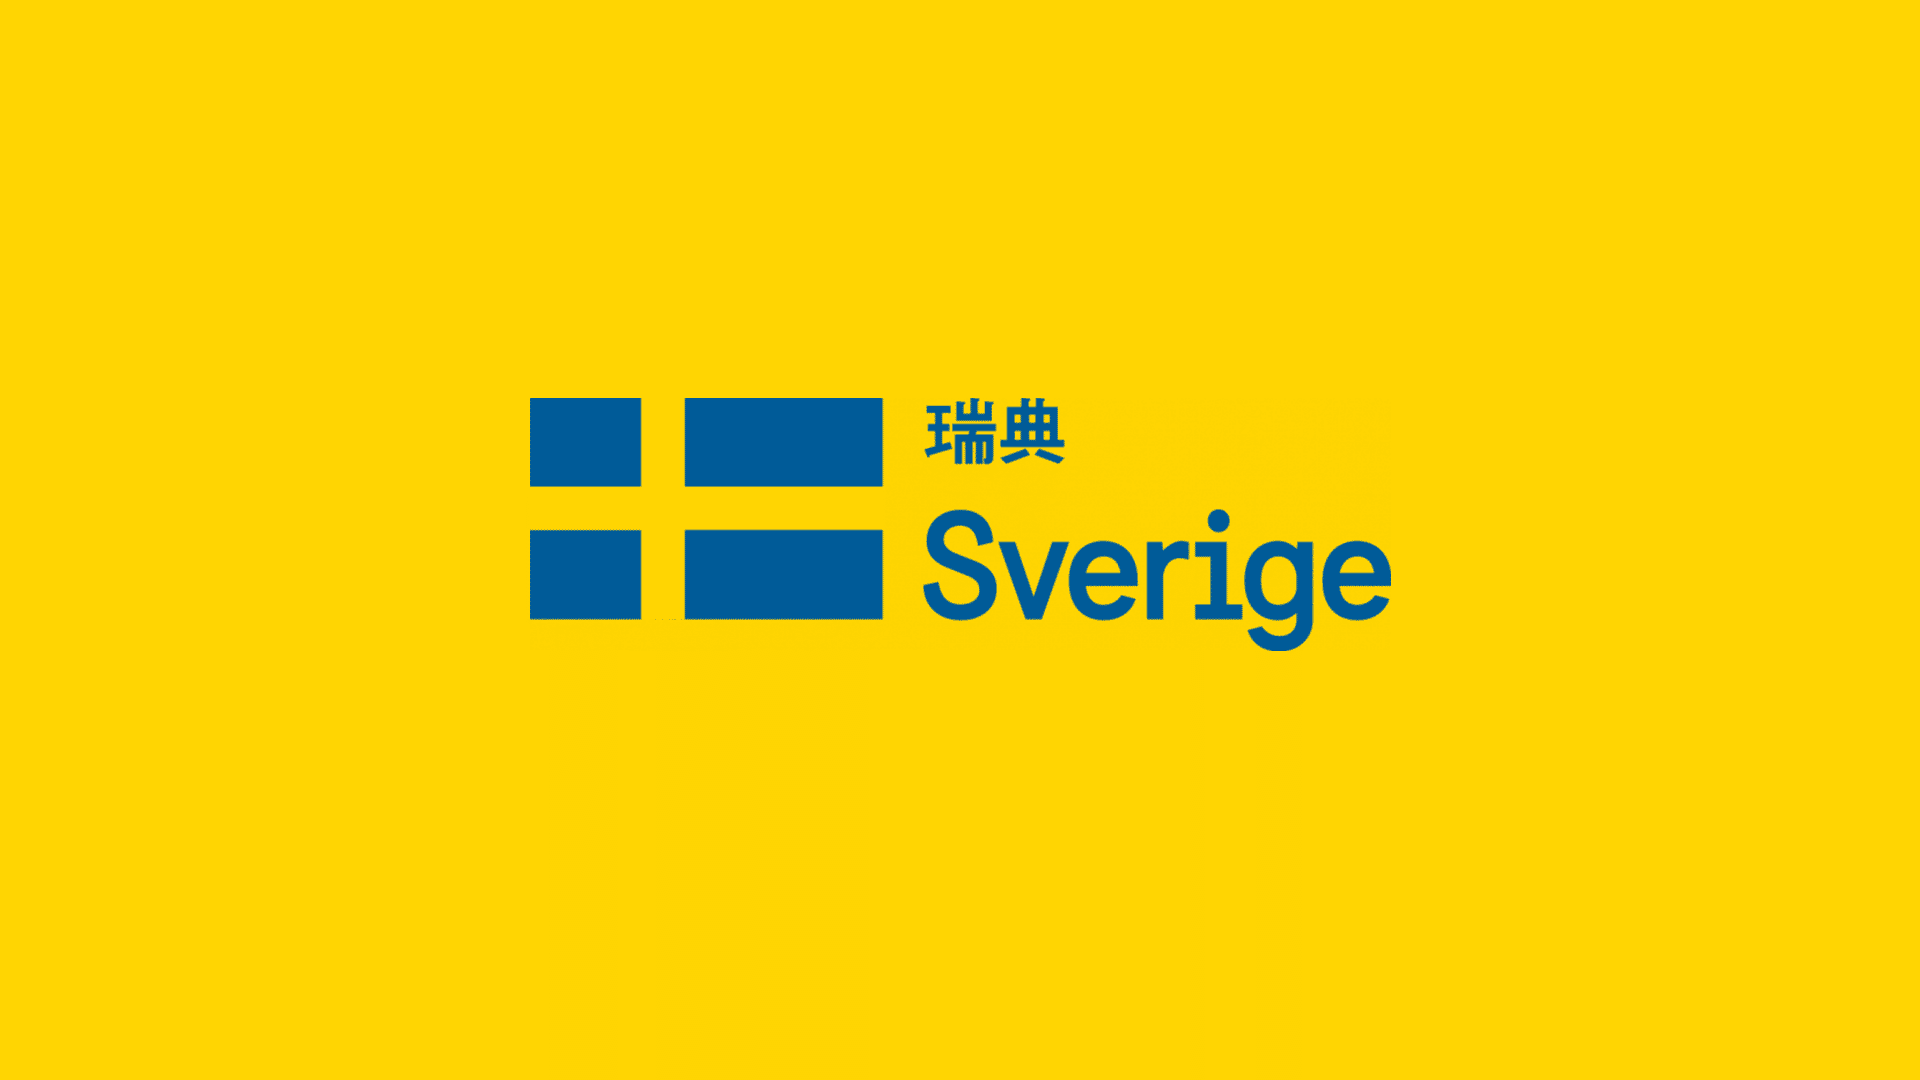 瑞典國家品牌形象2.0升級，以進一步加強與外界的交流